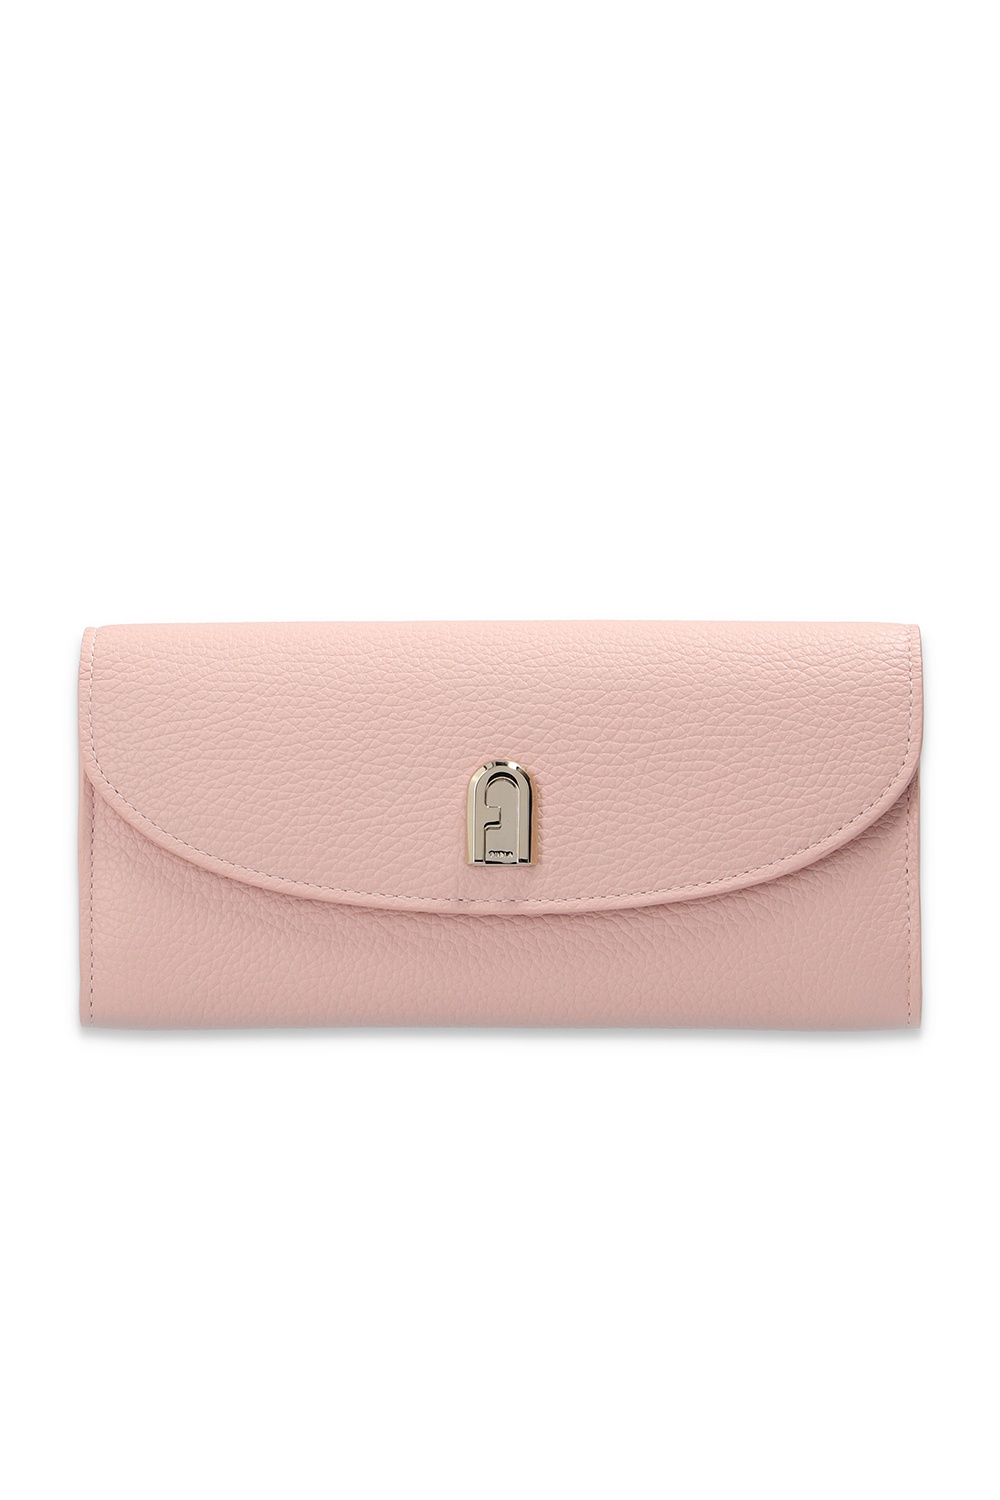 Pink ‘Sleek’ wallet Furla - Vitkac GB